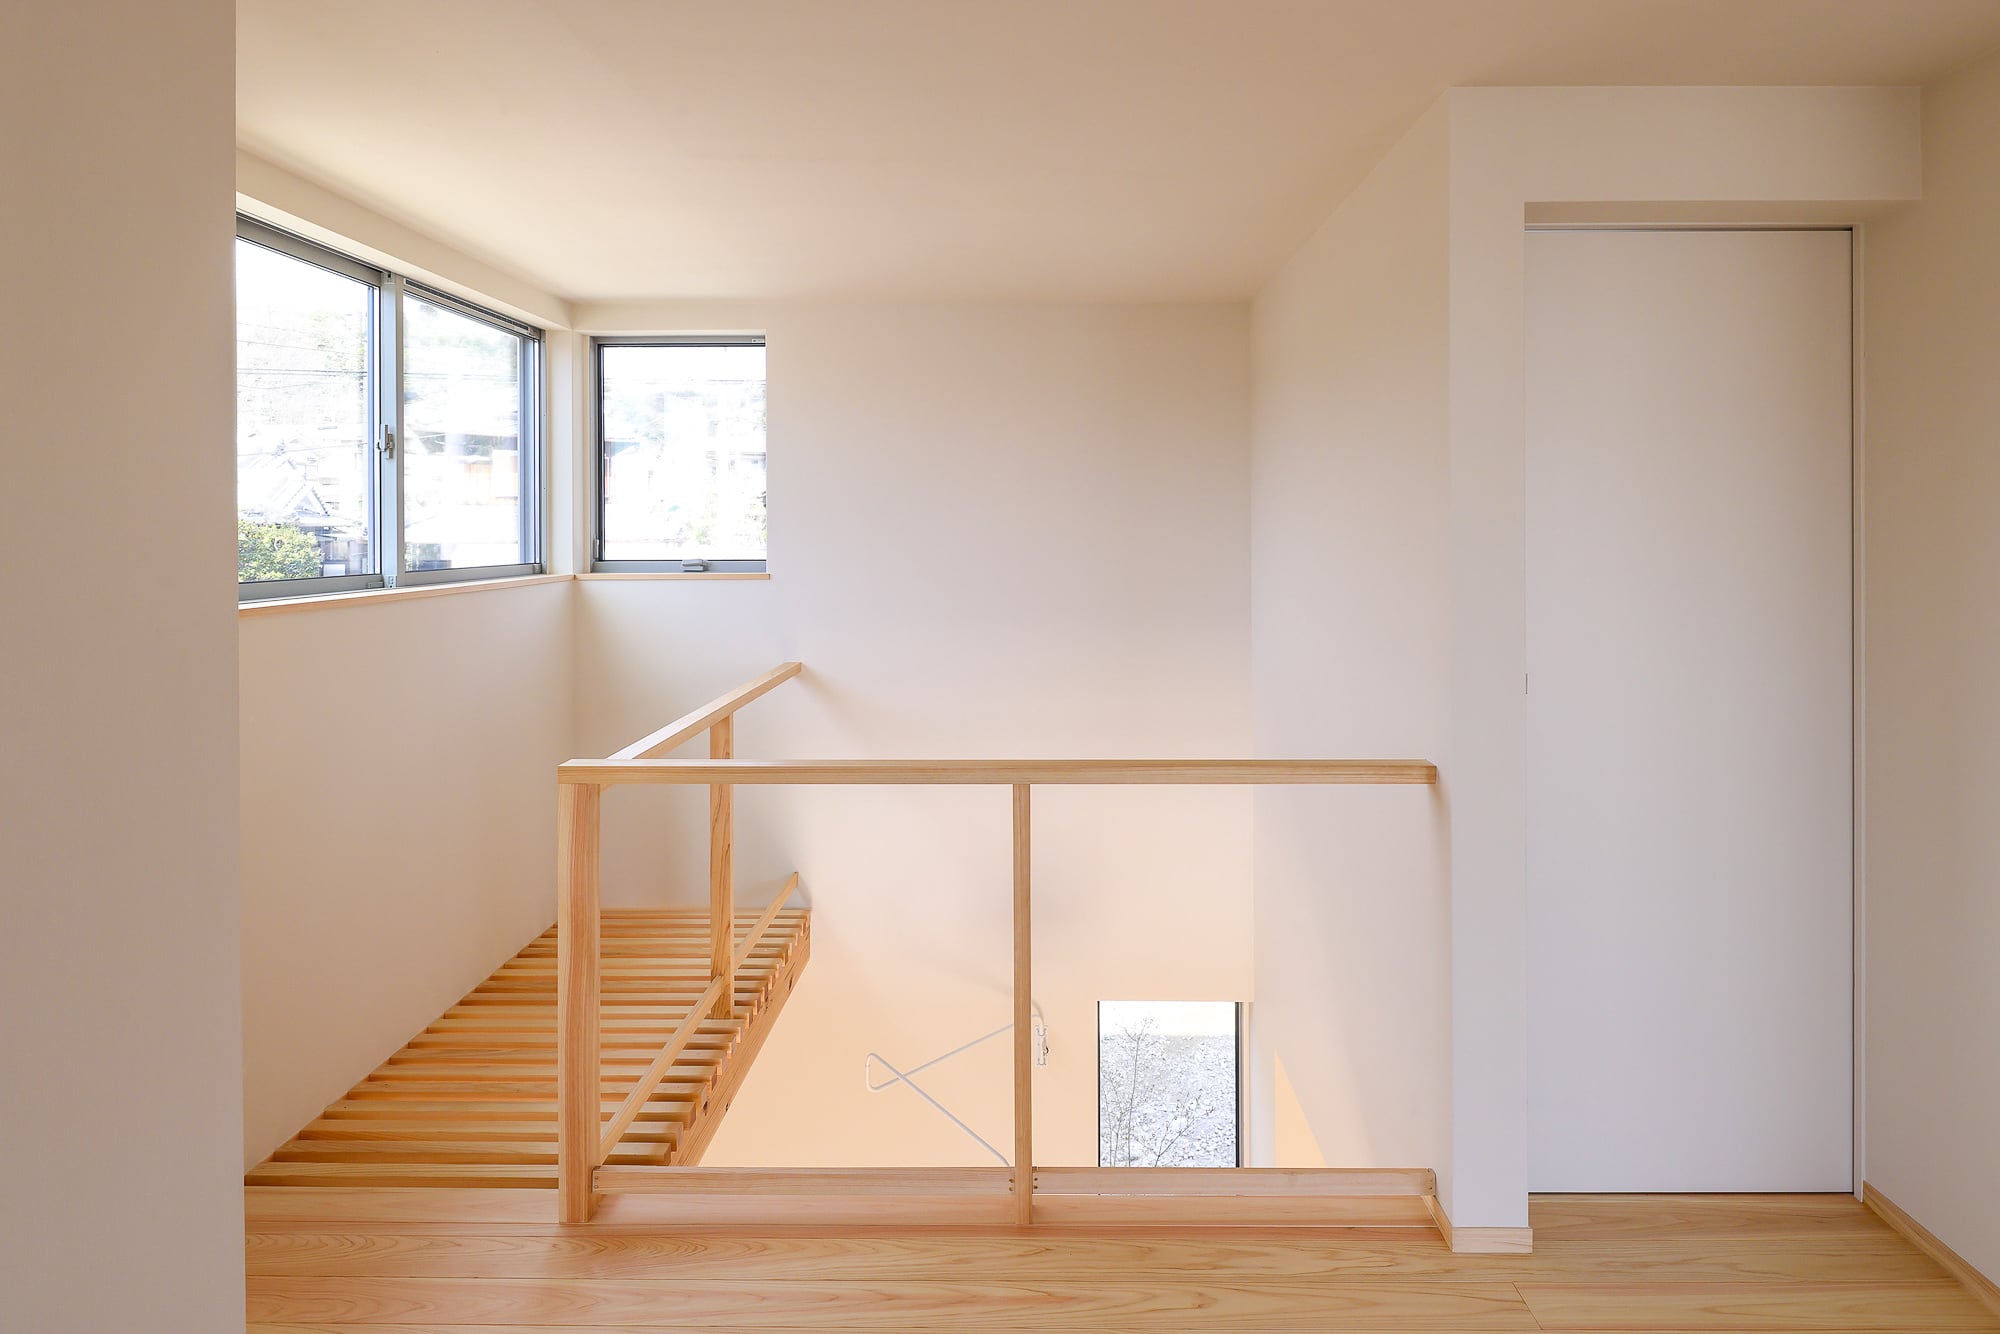 木の家 新築注文住宅「太陽がはぐくむ家」(宝塚市) 14 階段上